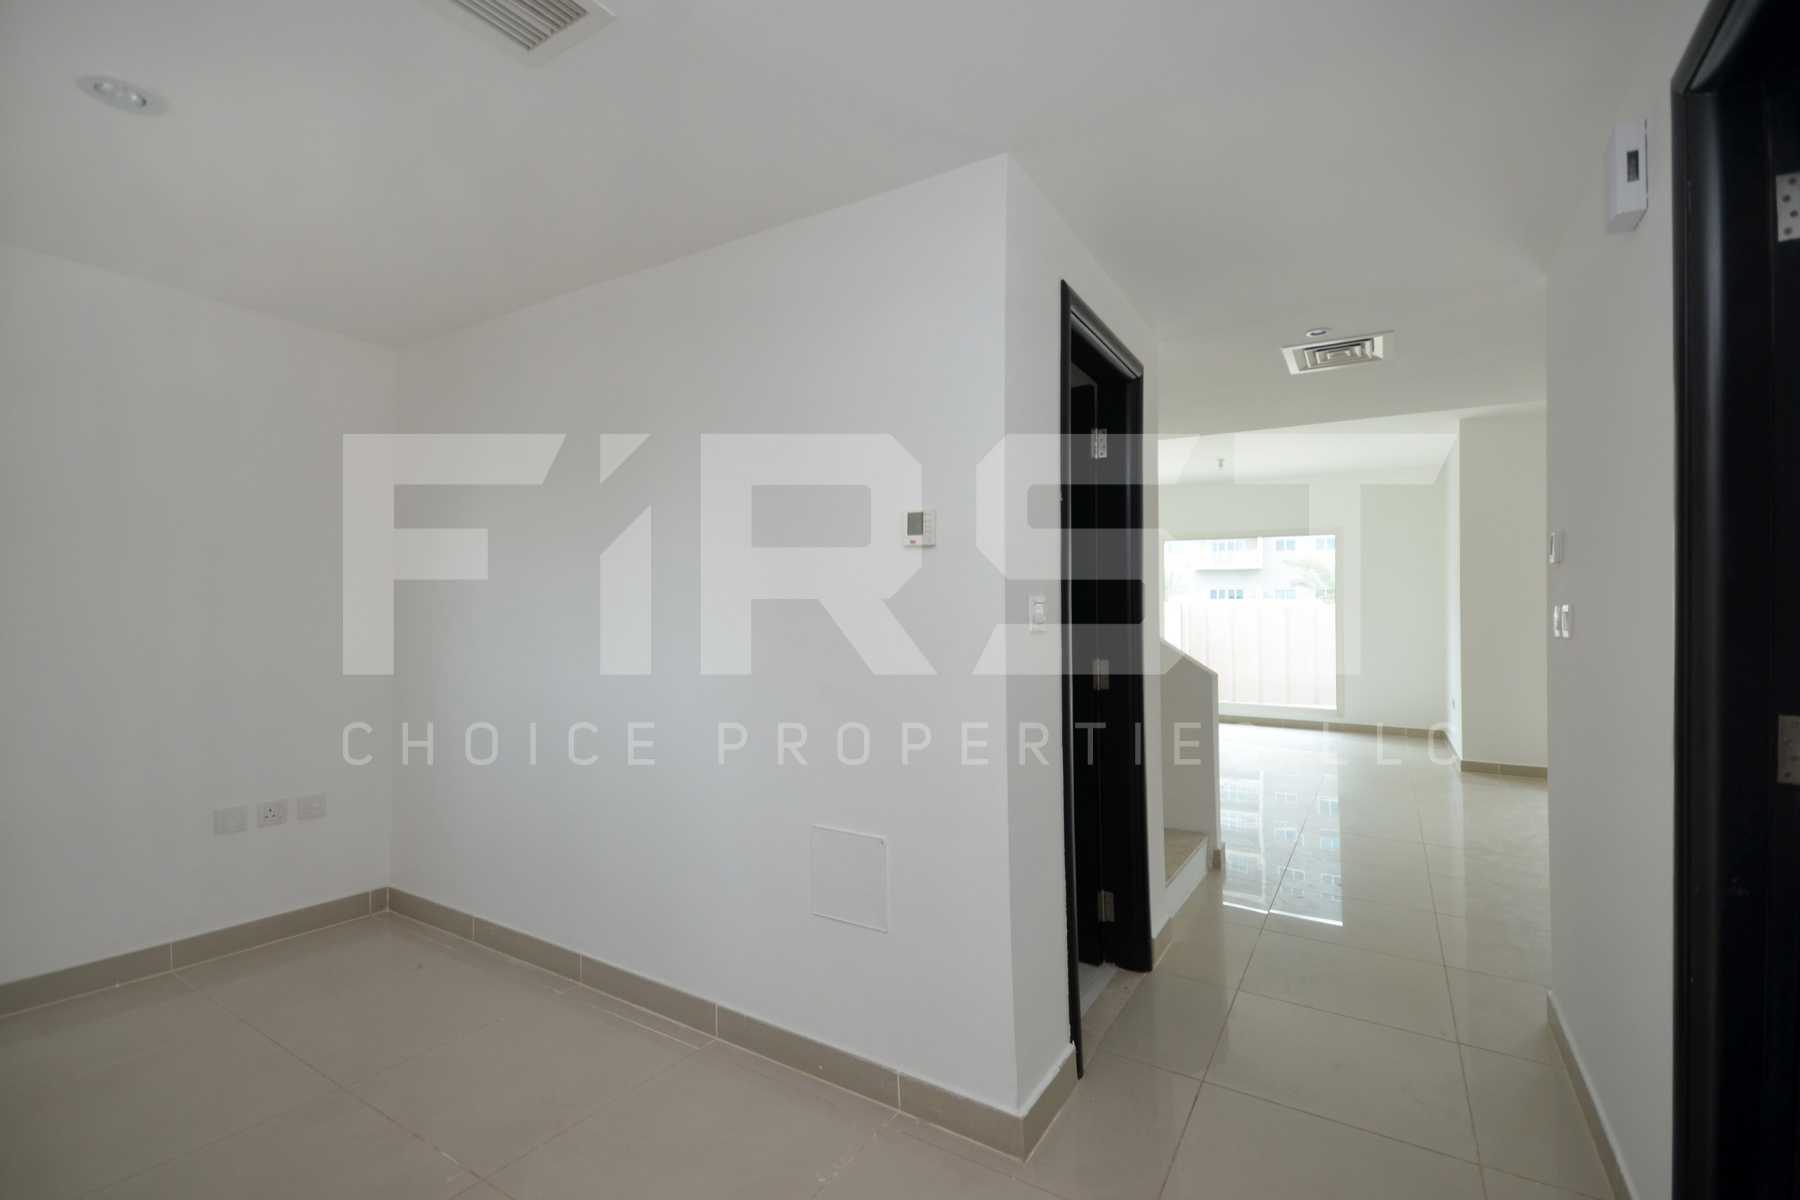 Internal Photo of 4 Bedroom Villa in Al Reef Villas Al Reef Abu Dhabi UAE 265.5 sq.m 2858 sq.ft (15).jpg